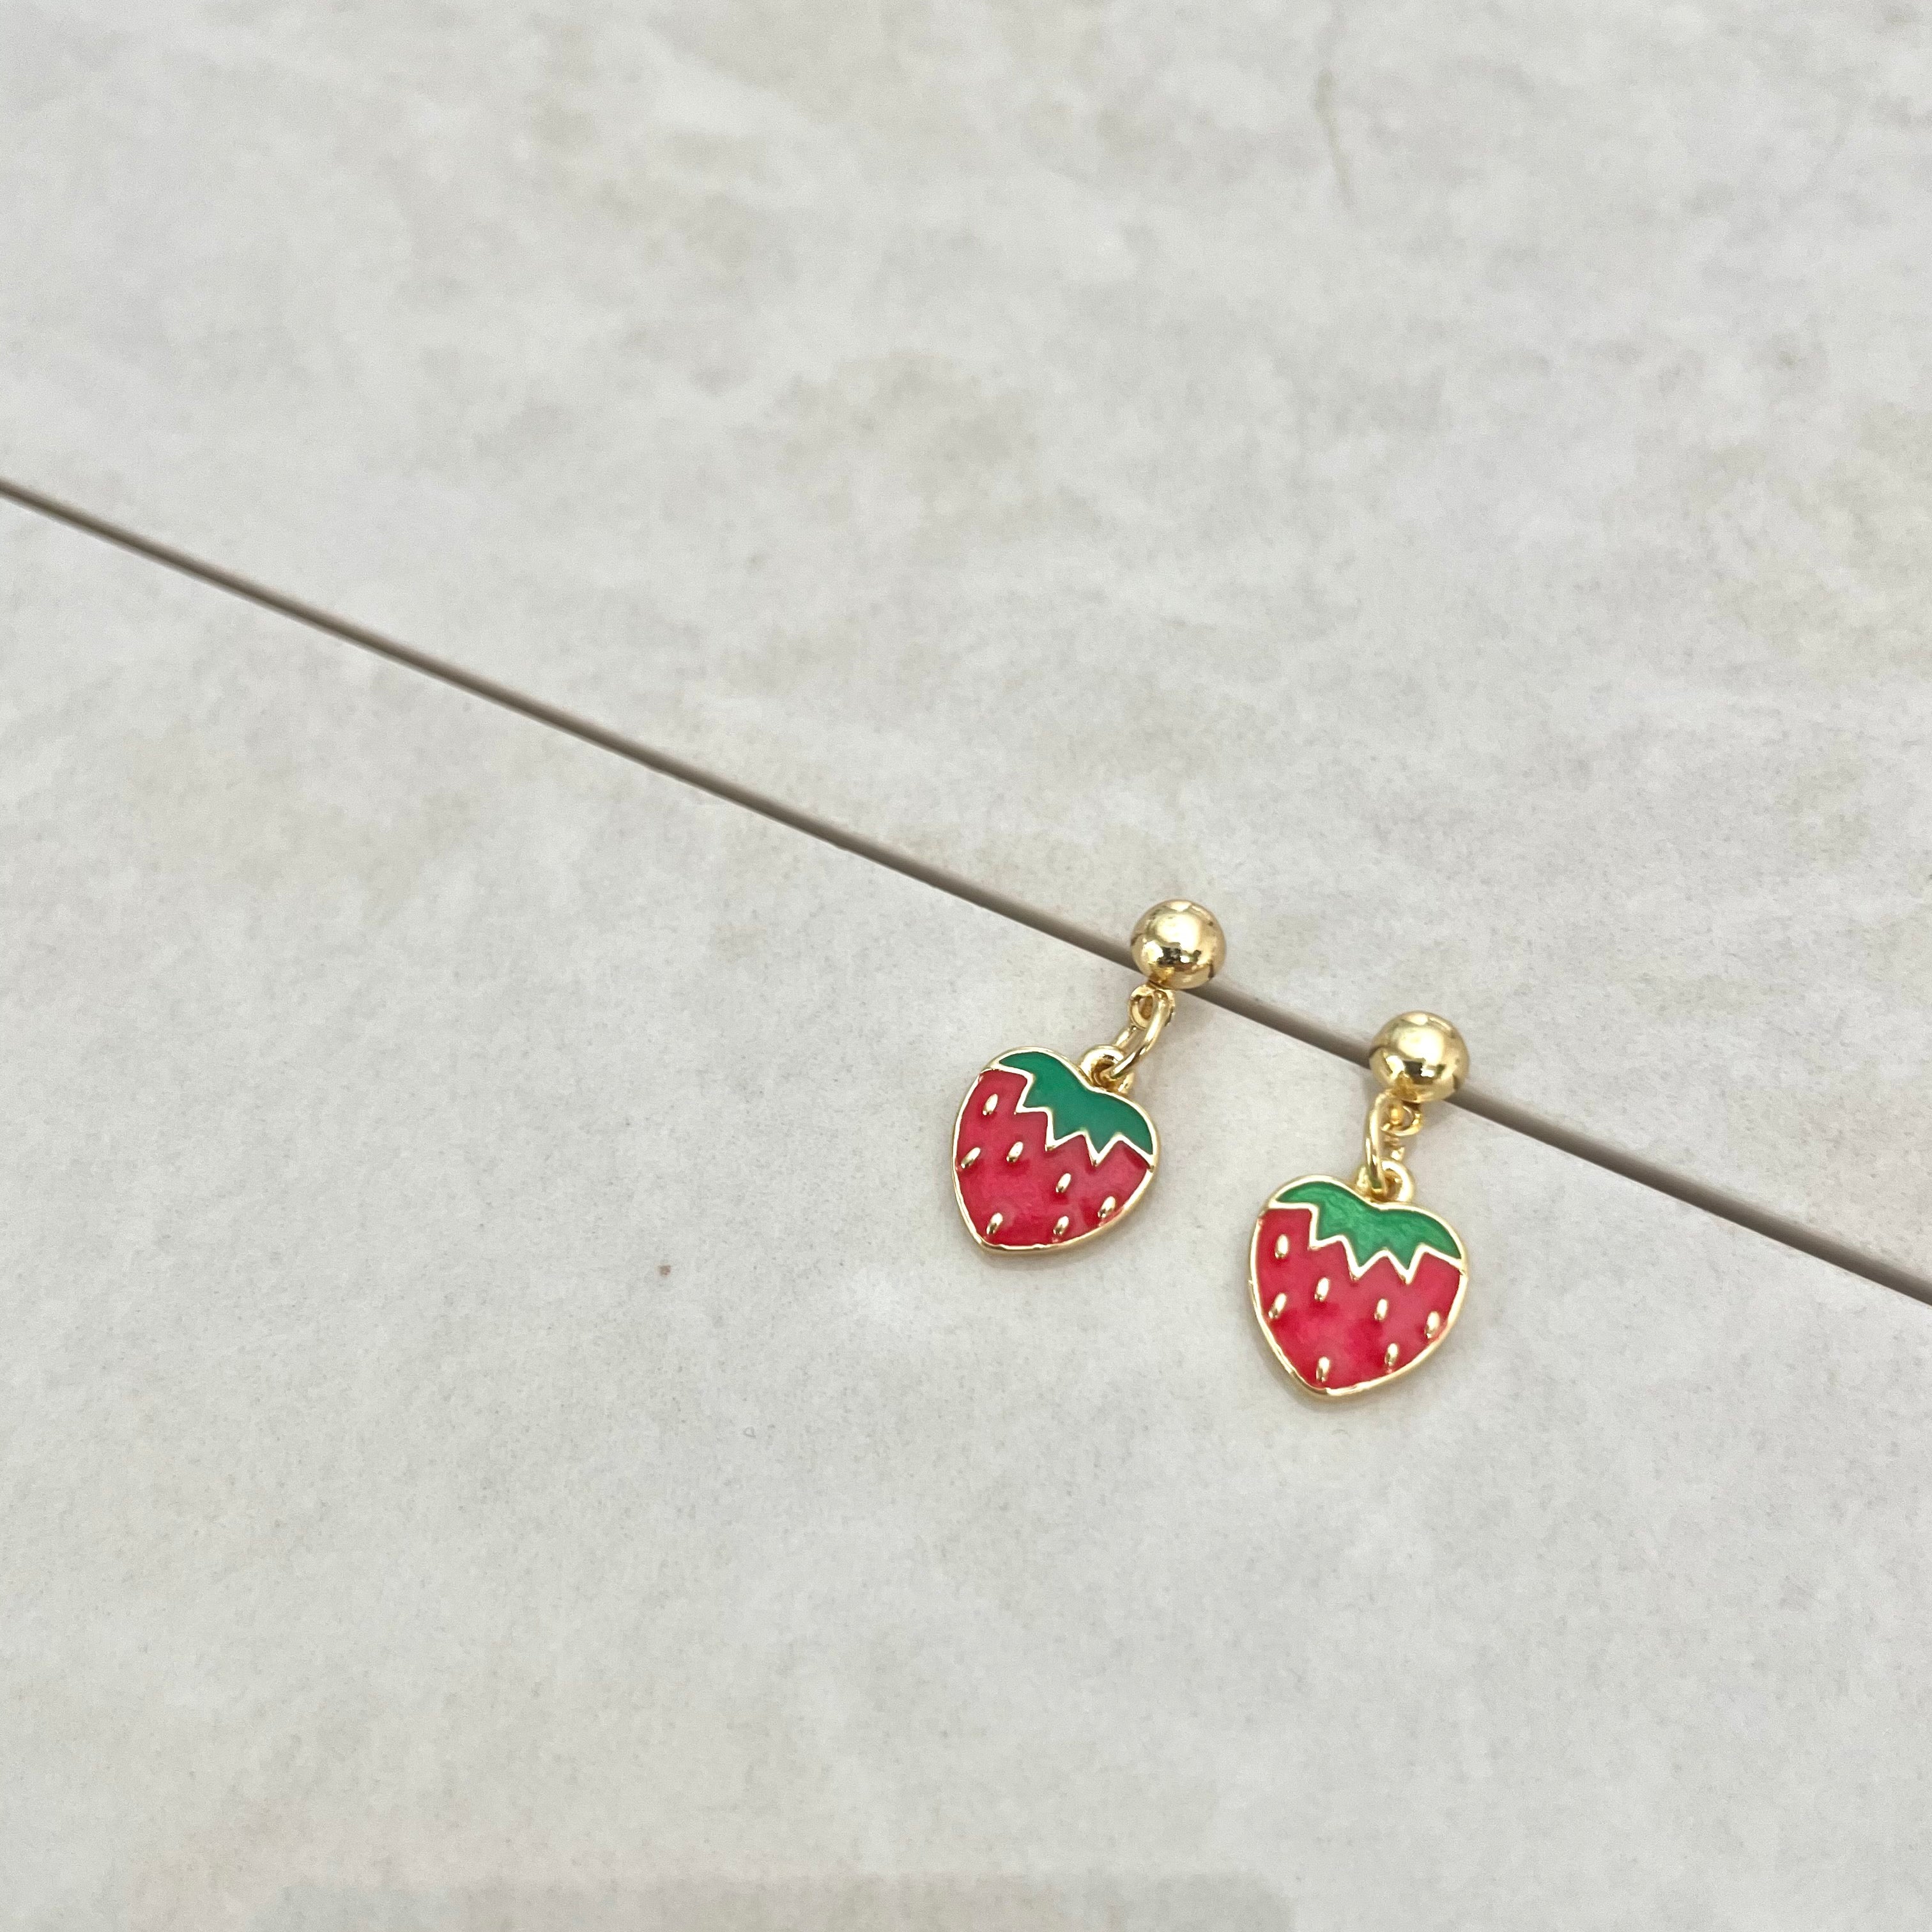 strawberry earrings - women's gold strawberry earrings